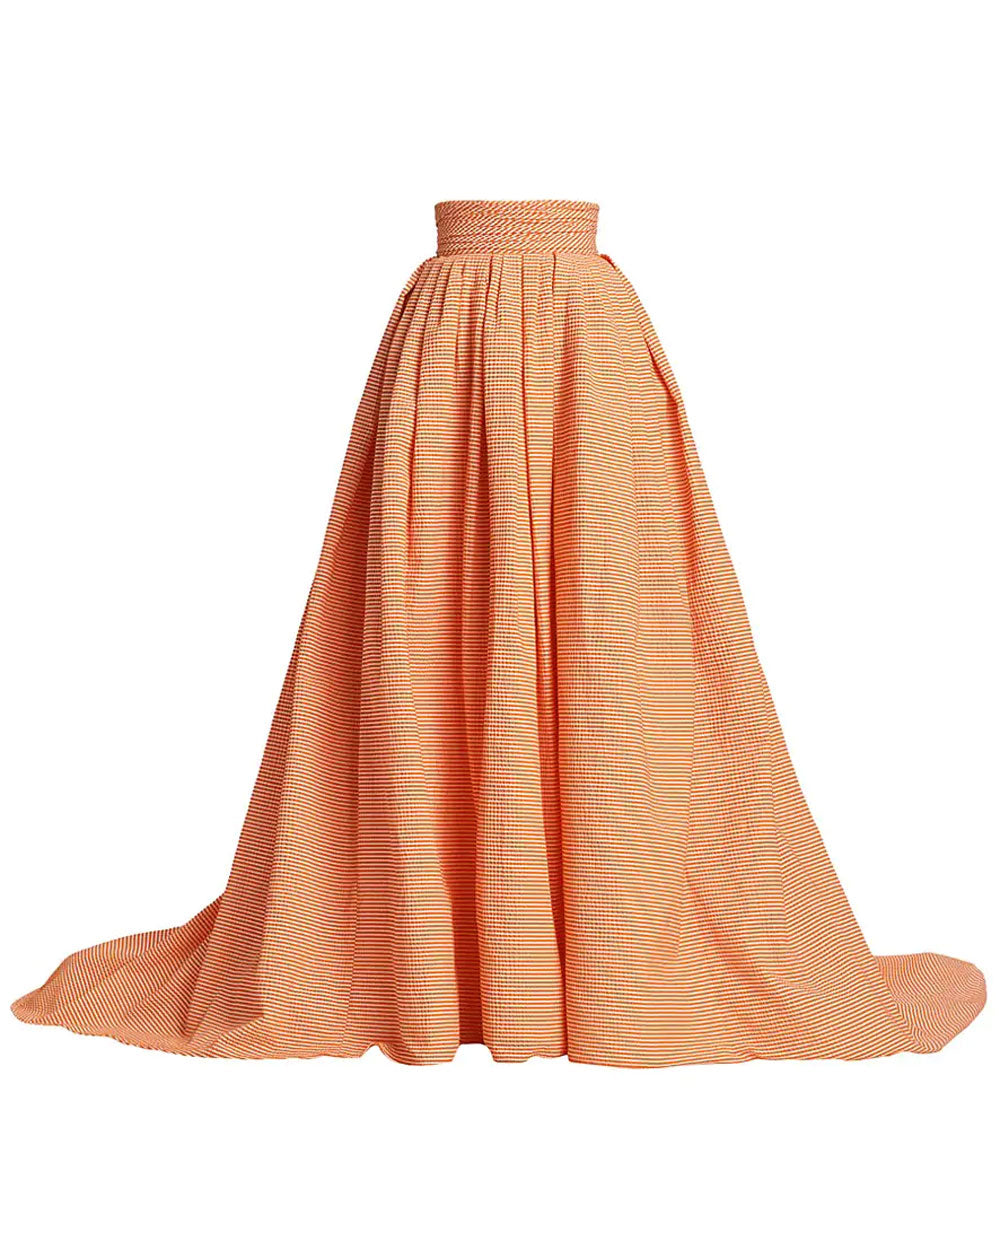 Marigold Seersucker Ruched Waist Ball Skirt